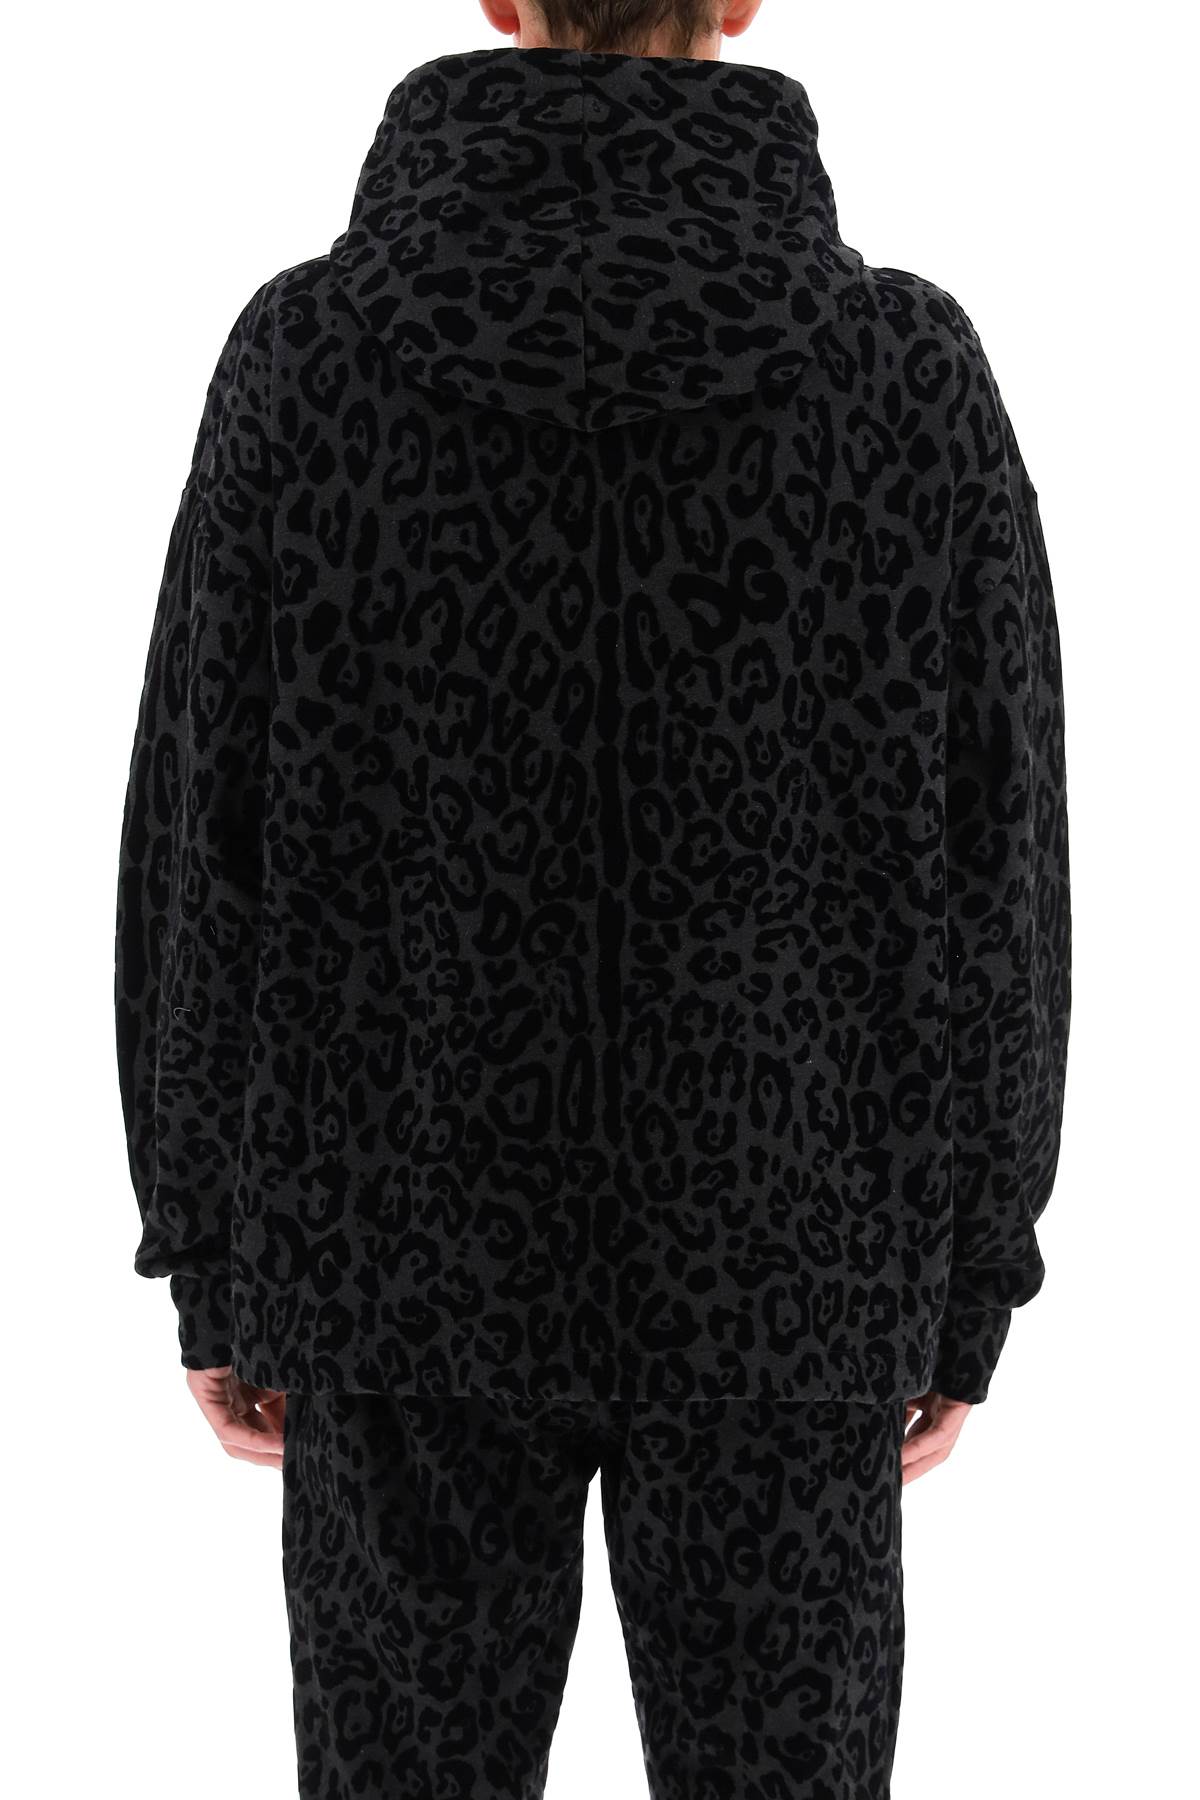 flocked leopard hoodie-2